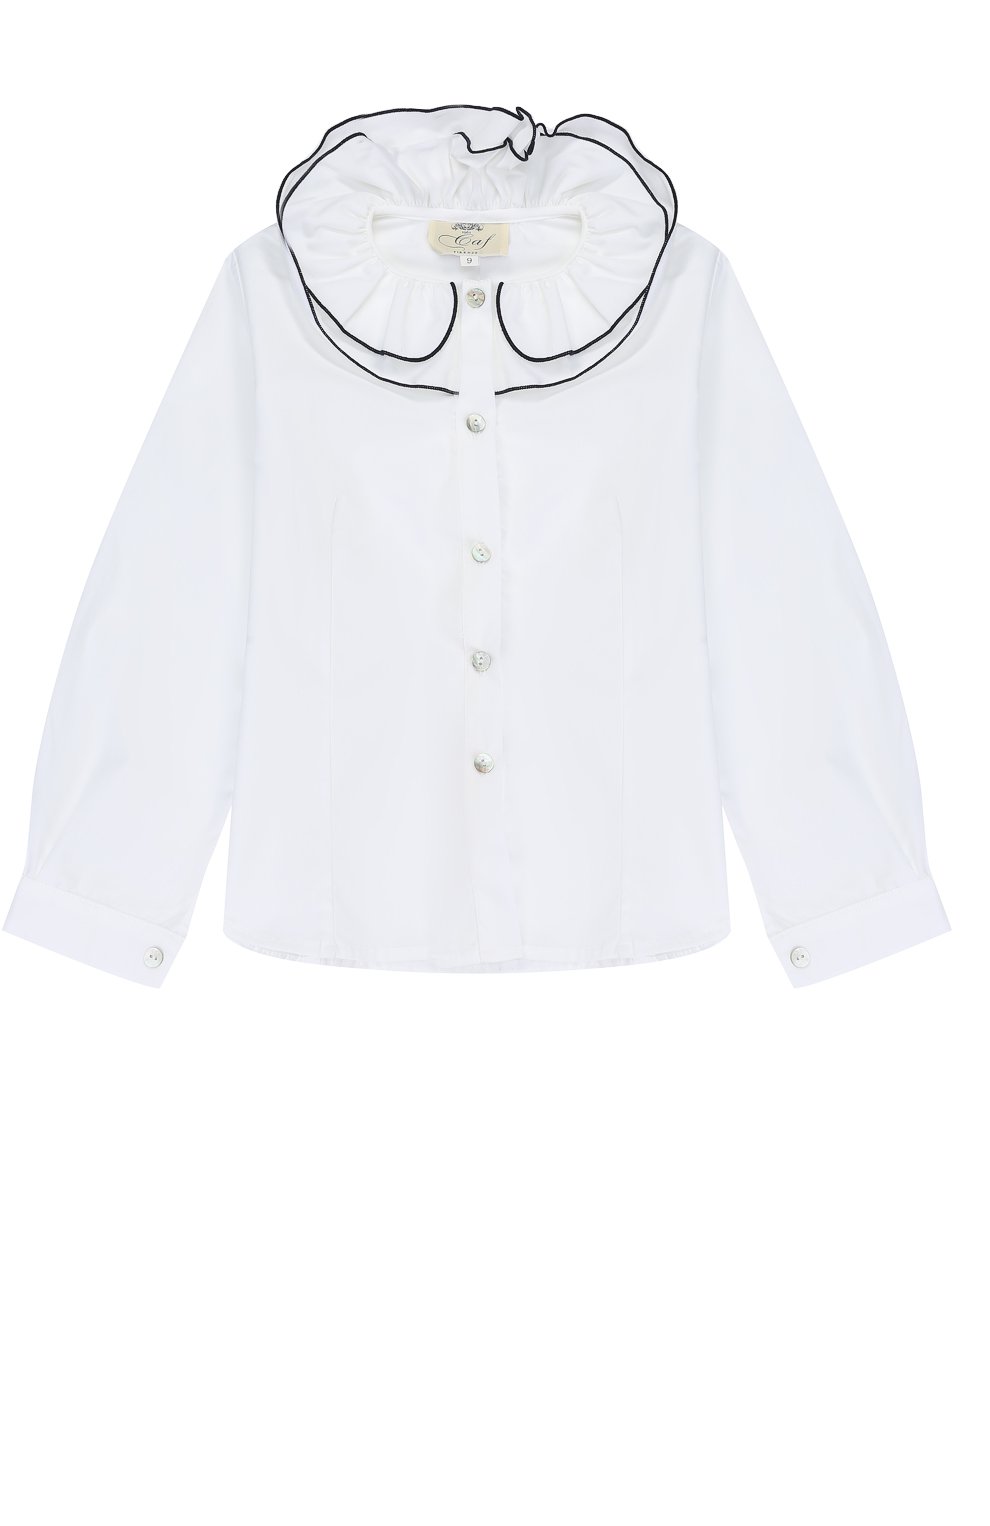 Блузы Caf, Хлопковая блуза с декоративным воротником и контрастной отделкой Caf, Италия, Белый, Хлопок: 100%;, 2307355  - купить